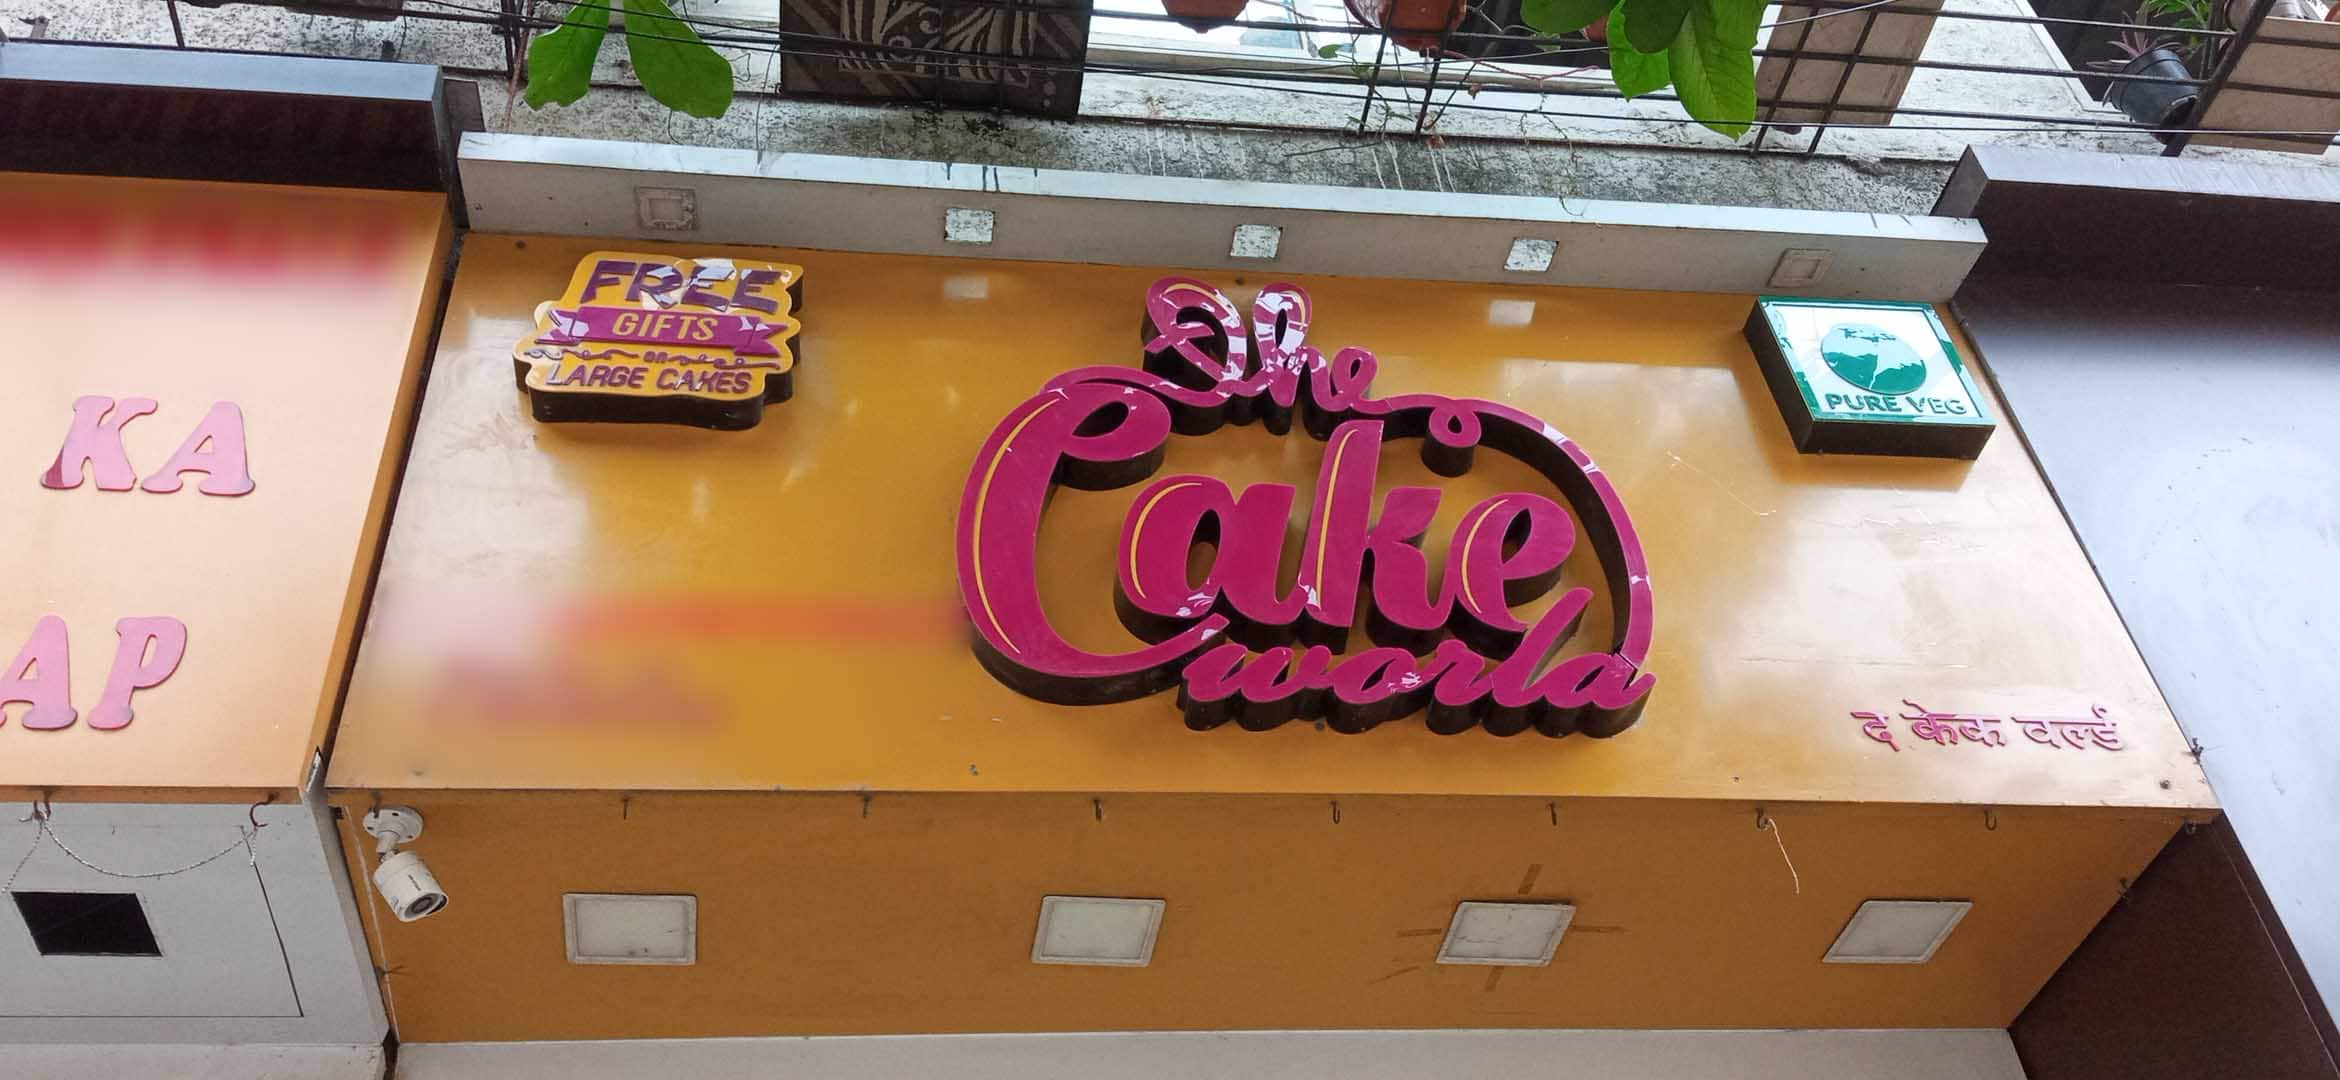 Sarika's Cake World - #homebakers #sarikascakeworld #vegeterianfood  #pureveg #egglesscake #navimumbaibakers #panvel #panvelkar #kamothe  #khandacolony #newpanvel #vichumbe #adaigaon #uran #cakedecorating  #cakedecorations #customisedcakes #themecakes ...